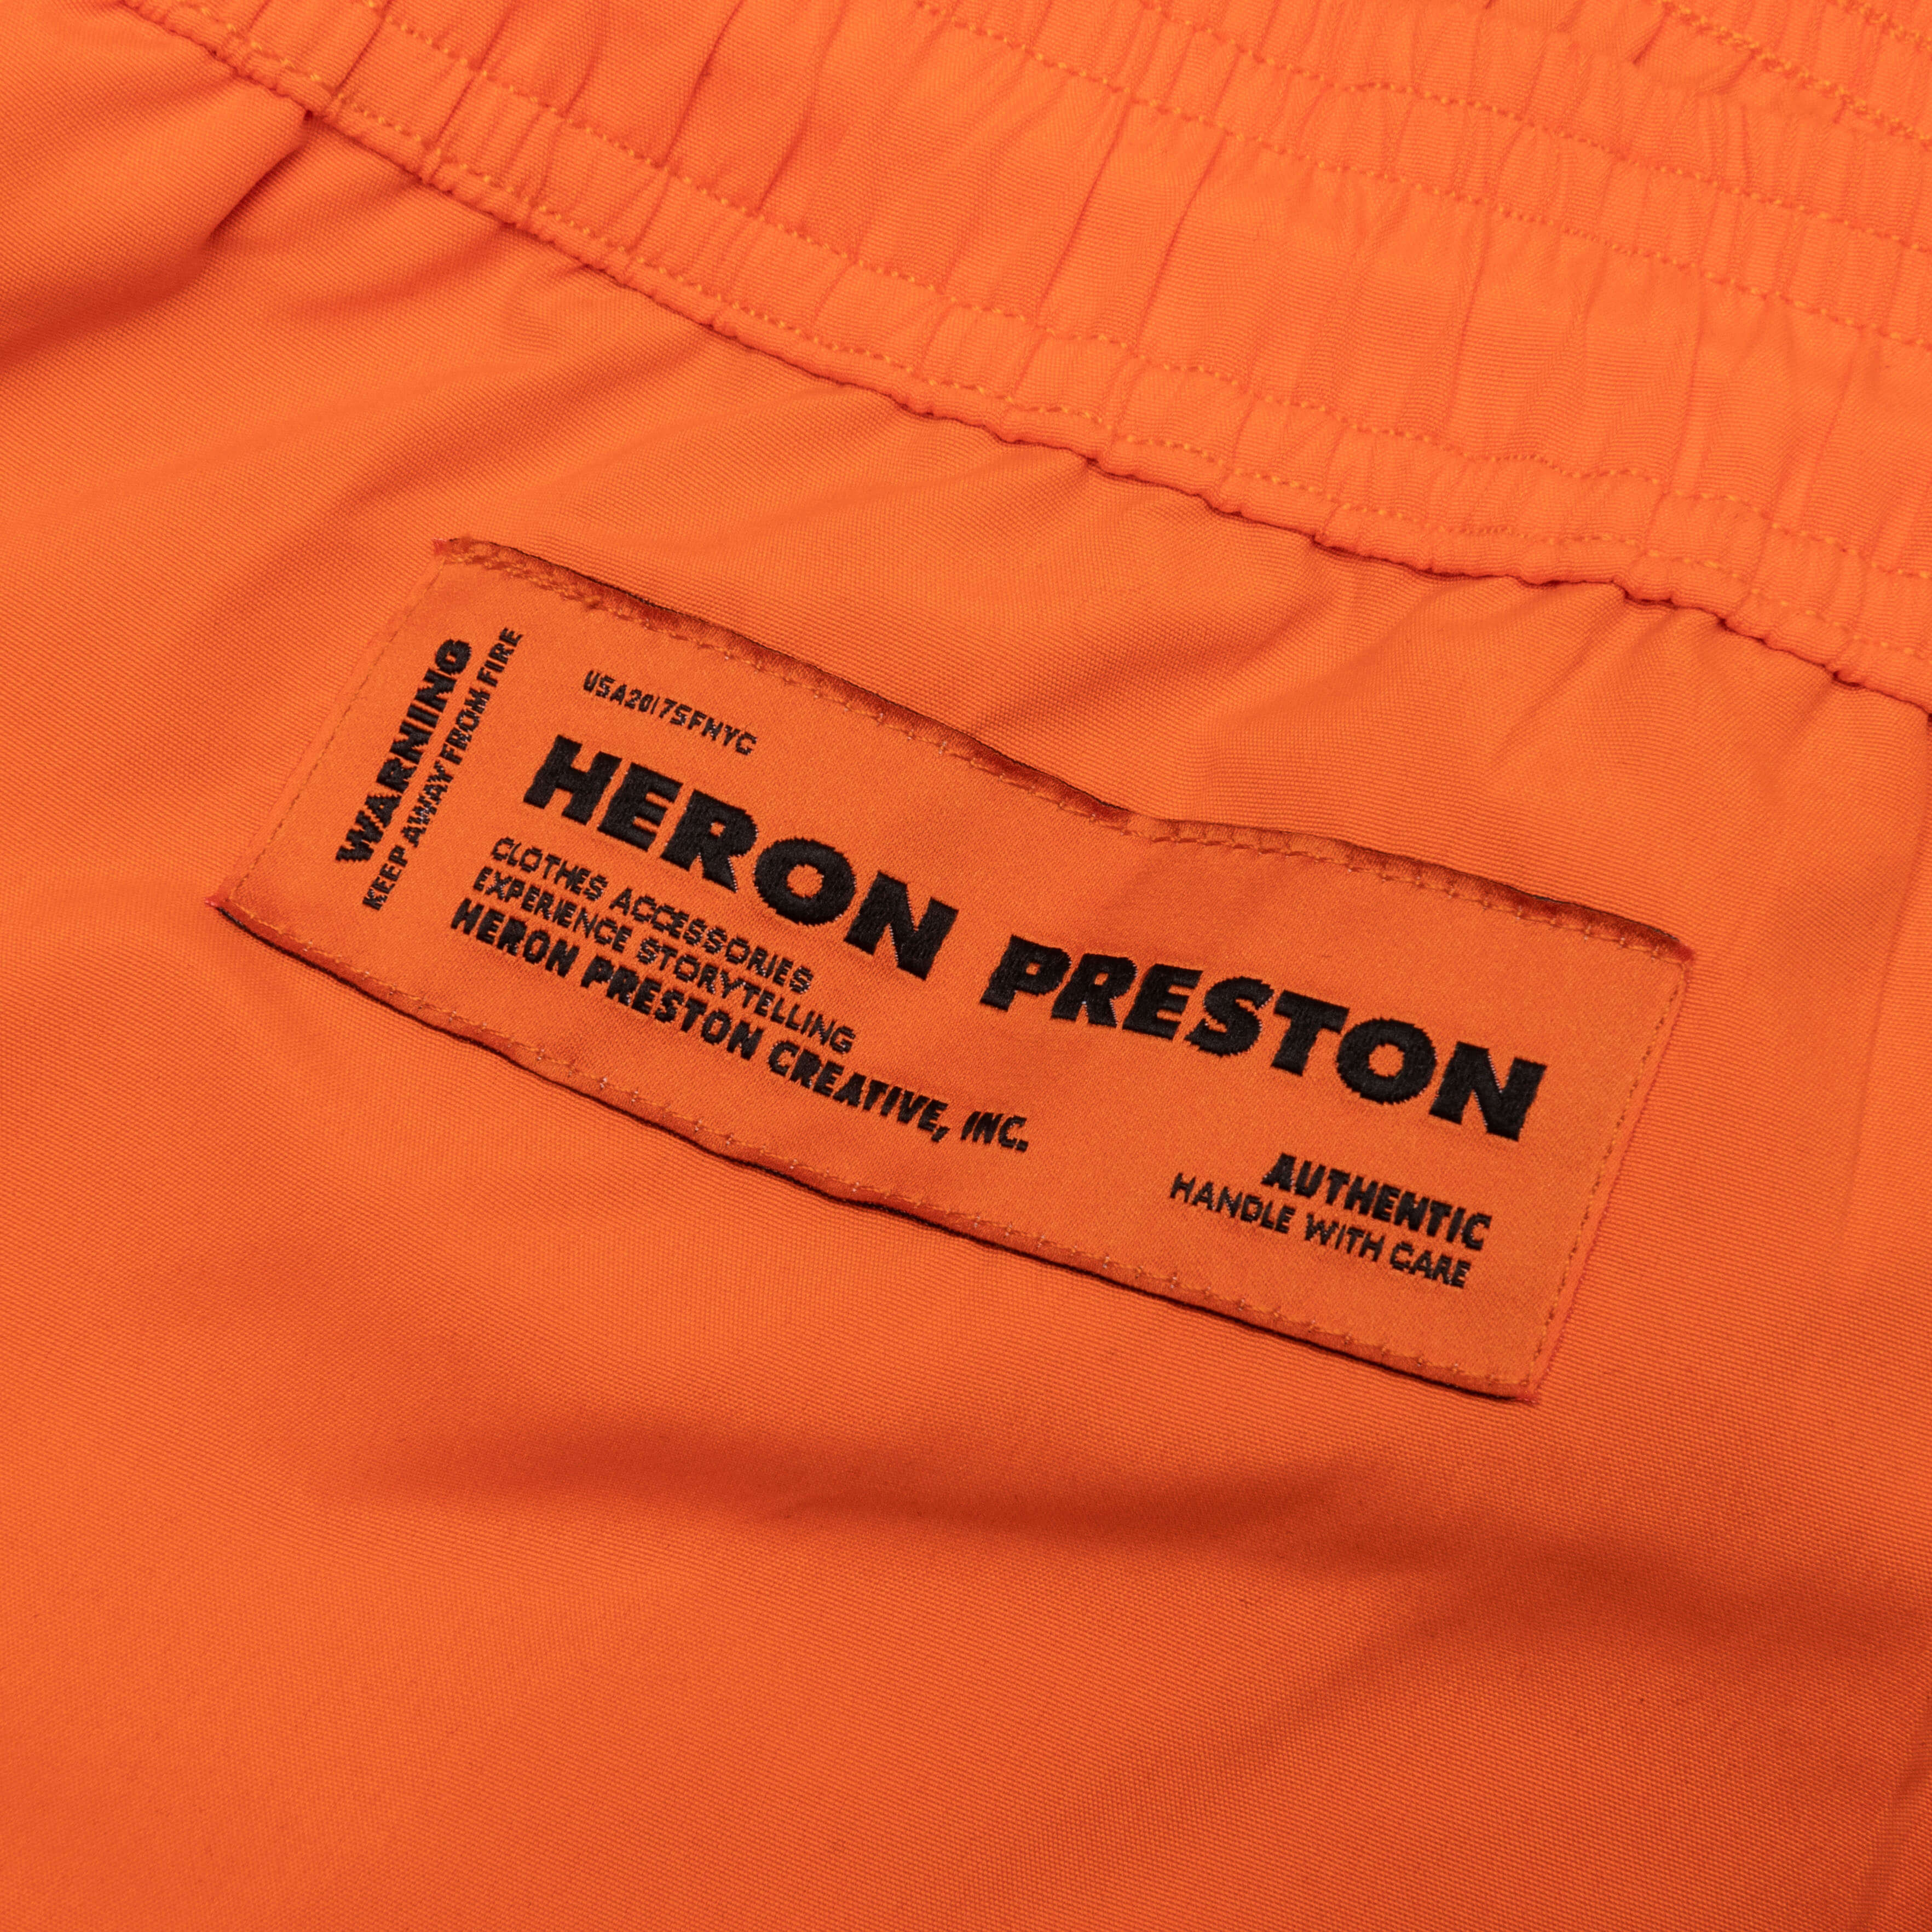 Nylon Swimshorts - Orange/No Color, , large image number null